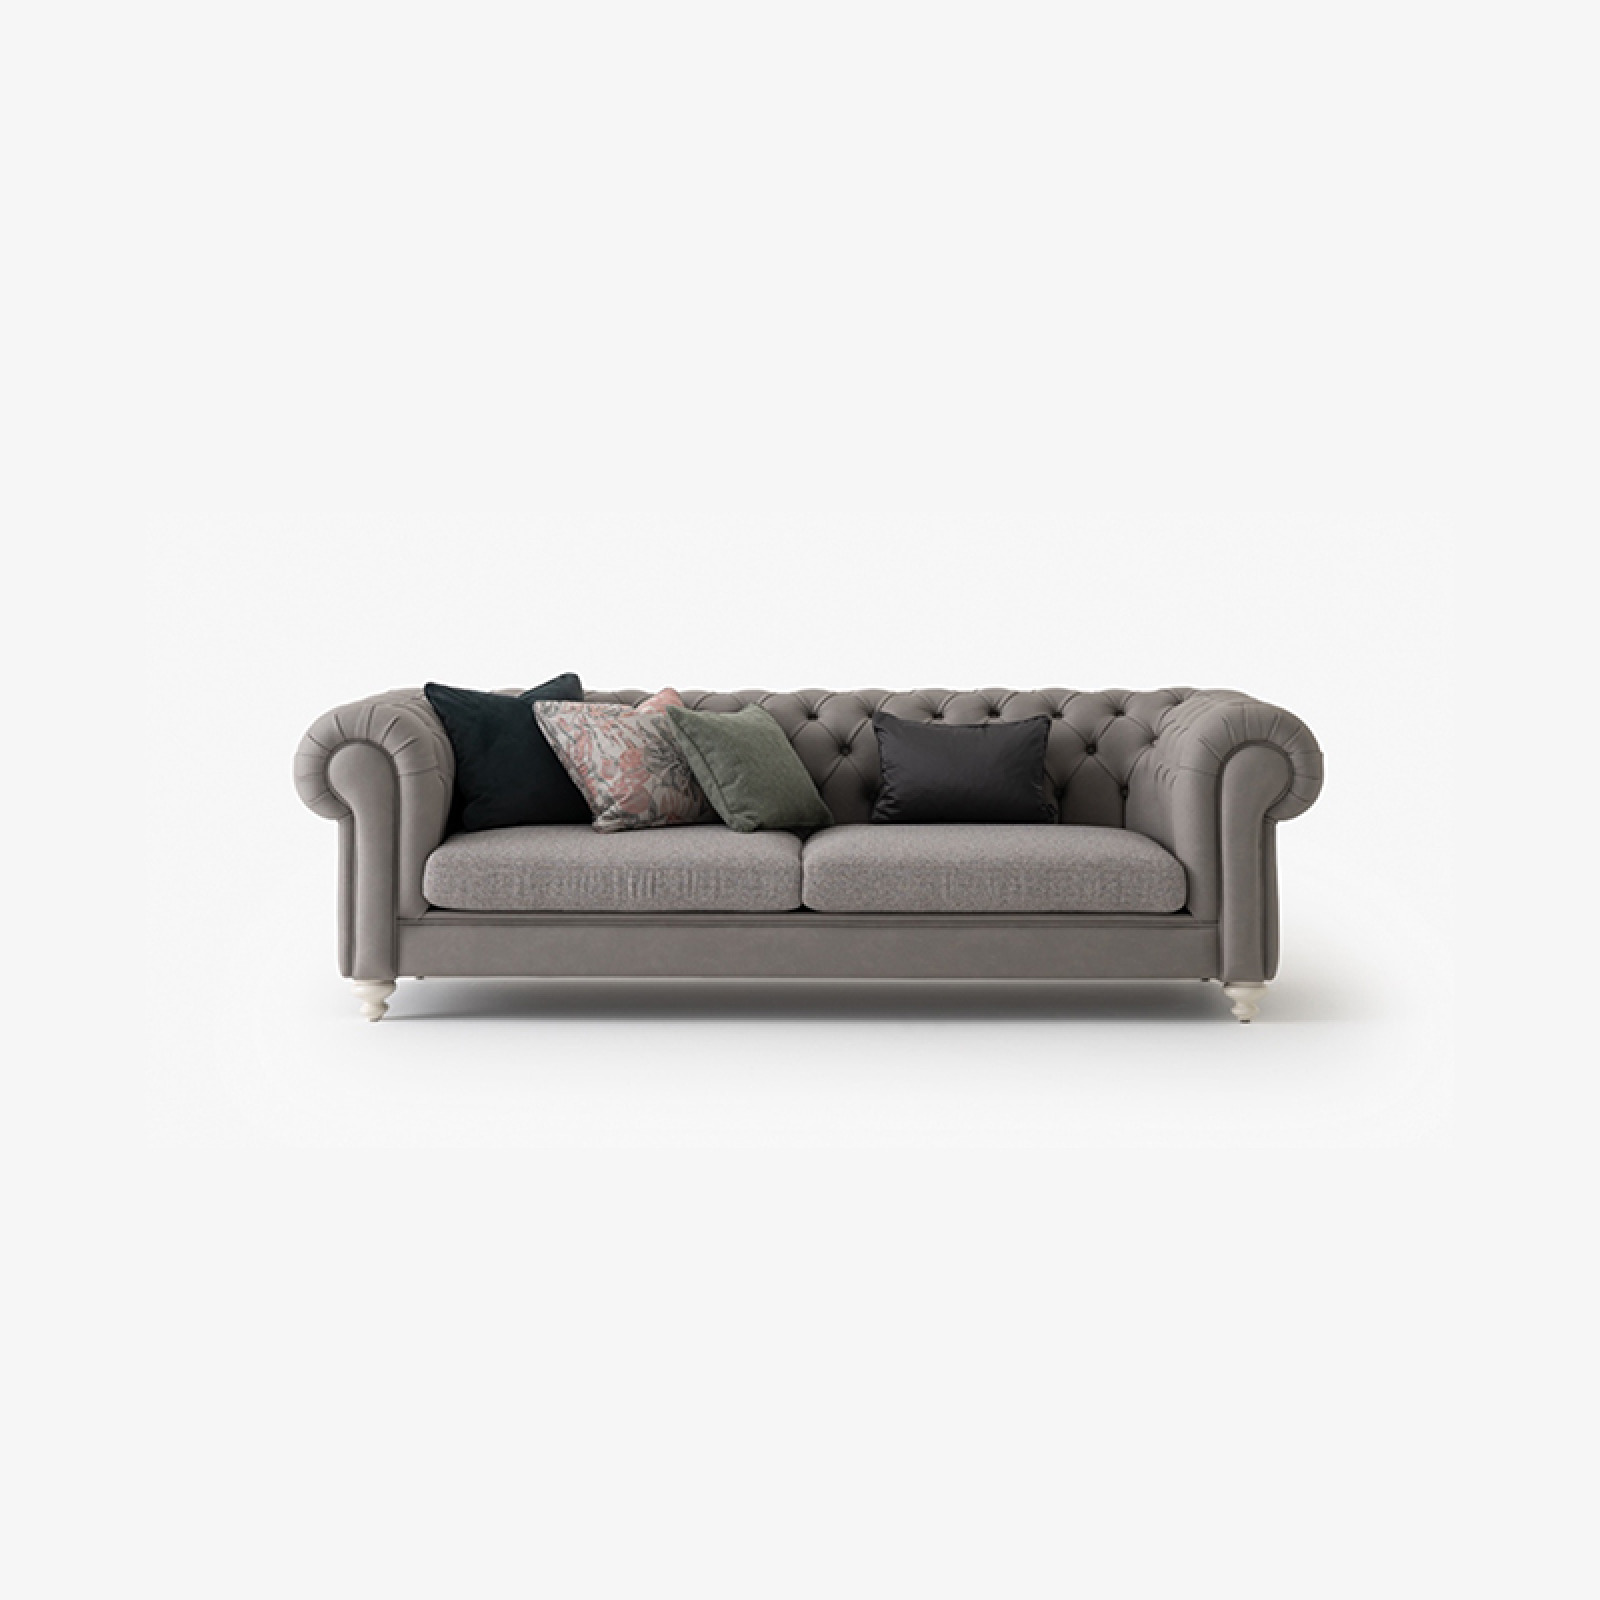 Aspendos sofa